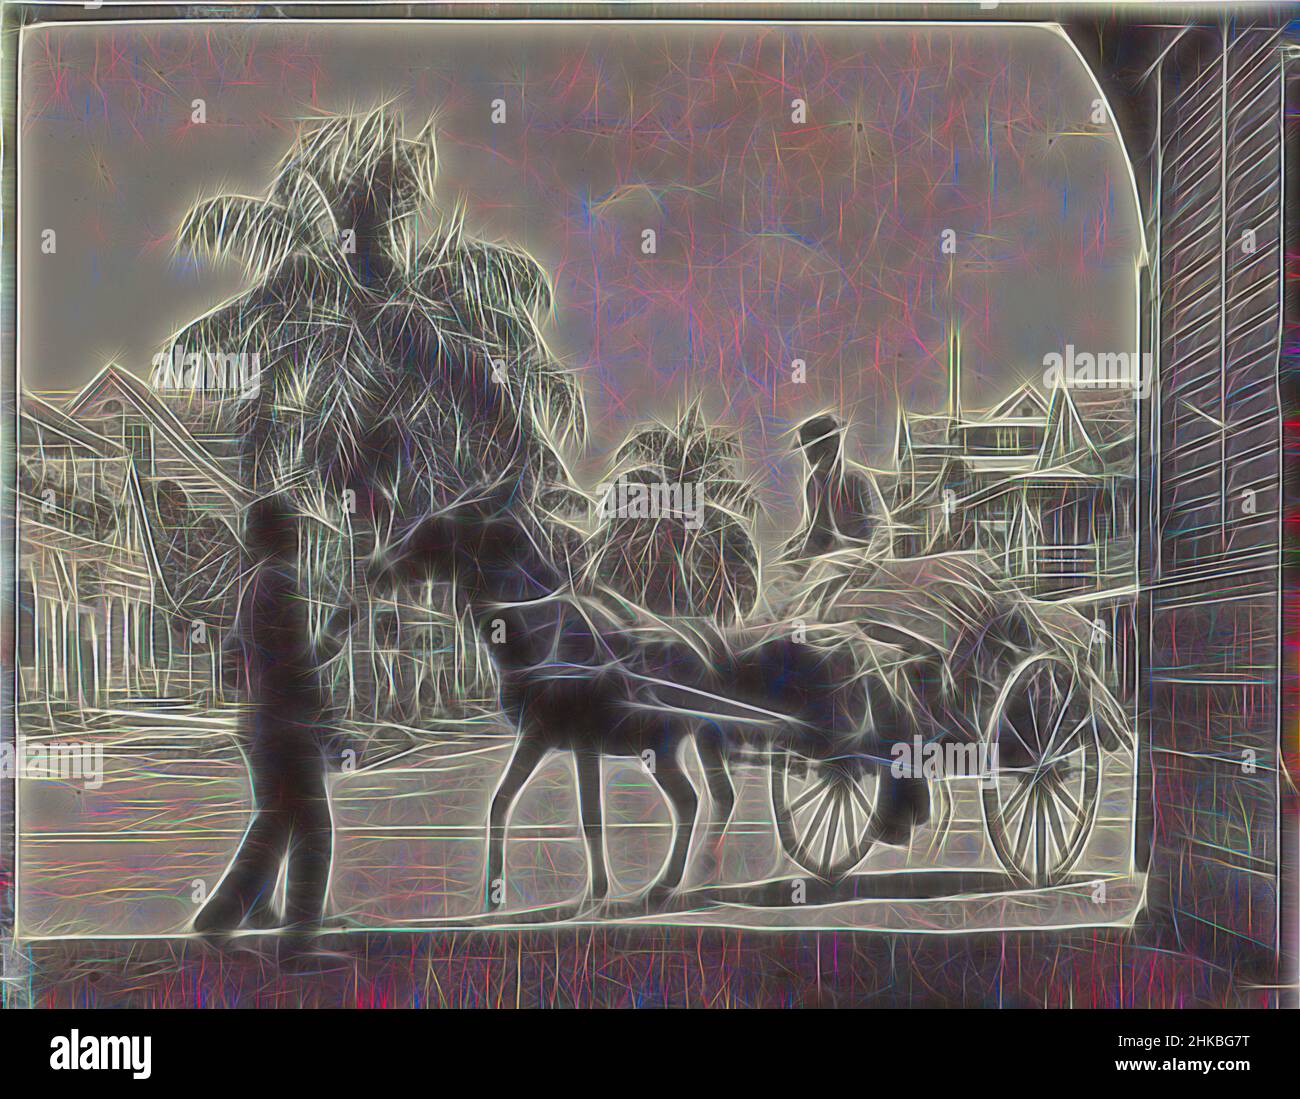 Inspiré par Wagon au hangar du KWIM, vue d'un cheval et d'un wagon devant l'entrée du hangar du KWIM sur Jodenbreestraat à Paramaribo, octobre 1908. Partie de l'album photo de la famille Boom-Gonggrijp au Suriname et Curaçao., Andries Augustus Boom, Paramaribo, oct-1908, hauteur 83, Repensé par Artotop. L'art classique réinventé avec une touche moderne. Conception de lumière chaleureuse et gaie, de luminosité et de rayonnement de lumière. La photographie s'inspire du surréalisme et du futurisme, embrassant l'énergie dynamique de la technologie moderne, du mouvement, de la vitesse et révolutionne la culture Banque D'Images